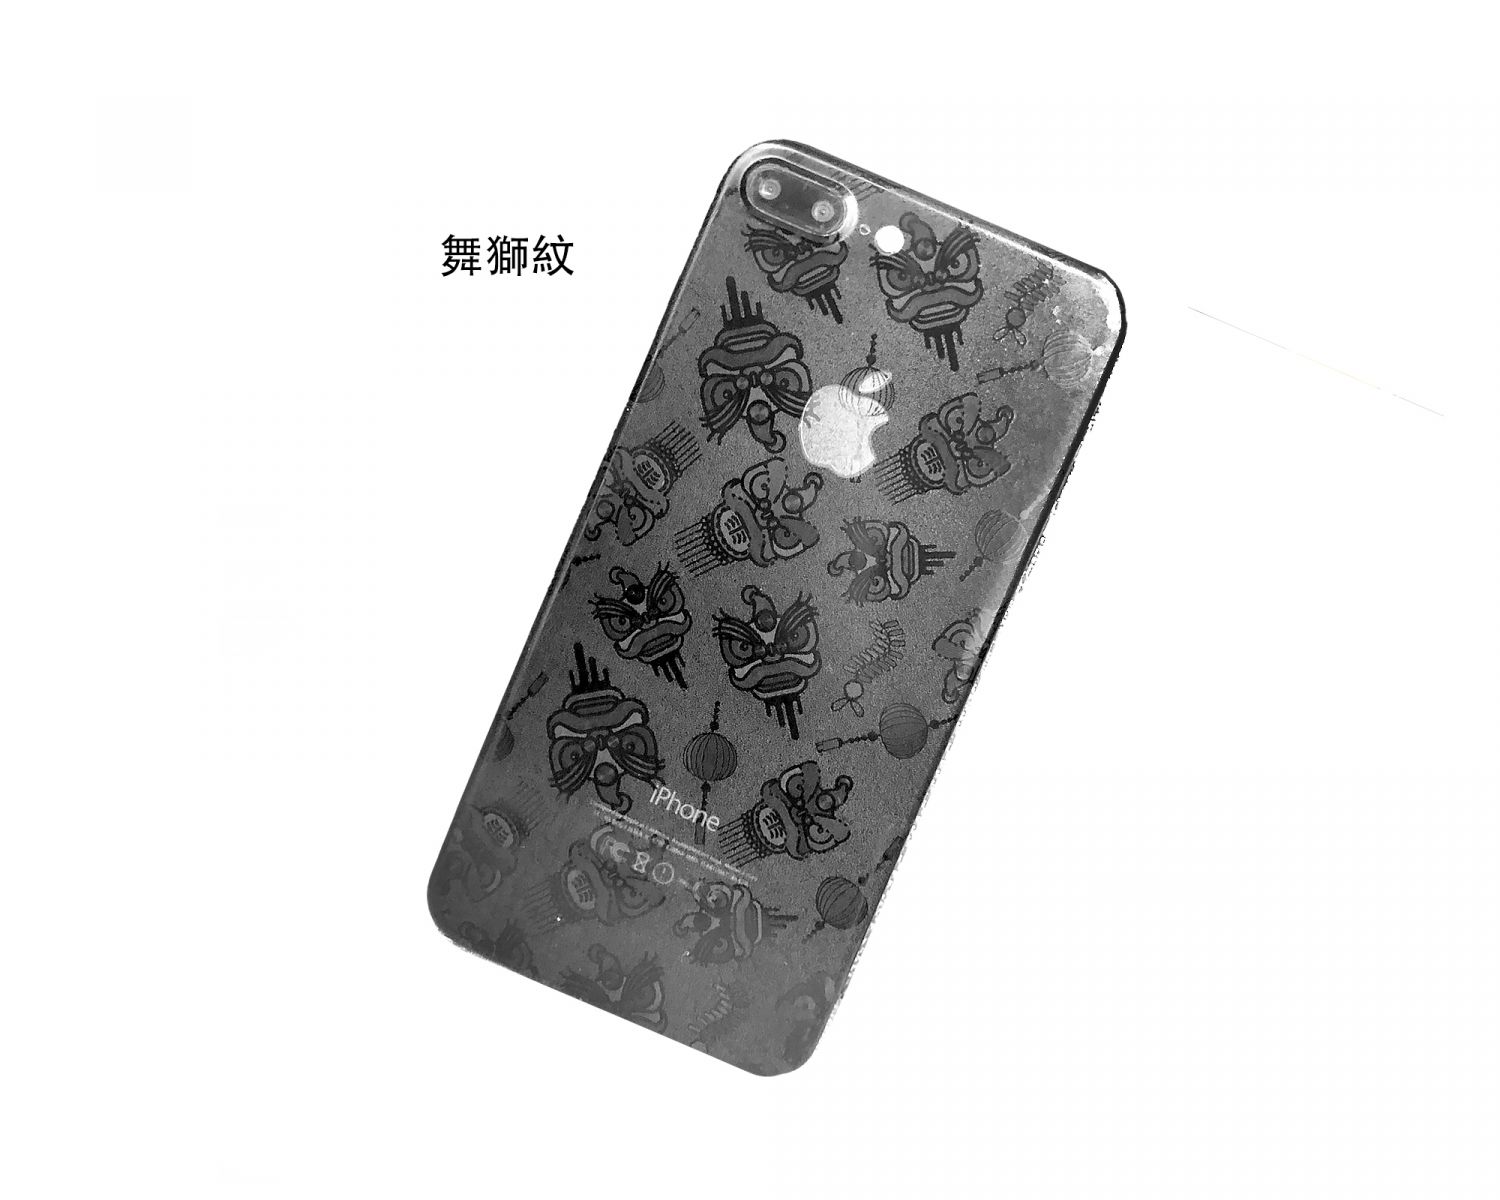 iPhone X 全機包膜 + imos 3D 滿版玻璃保護貼 - C Jay Tech